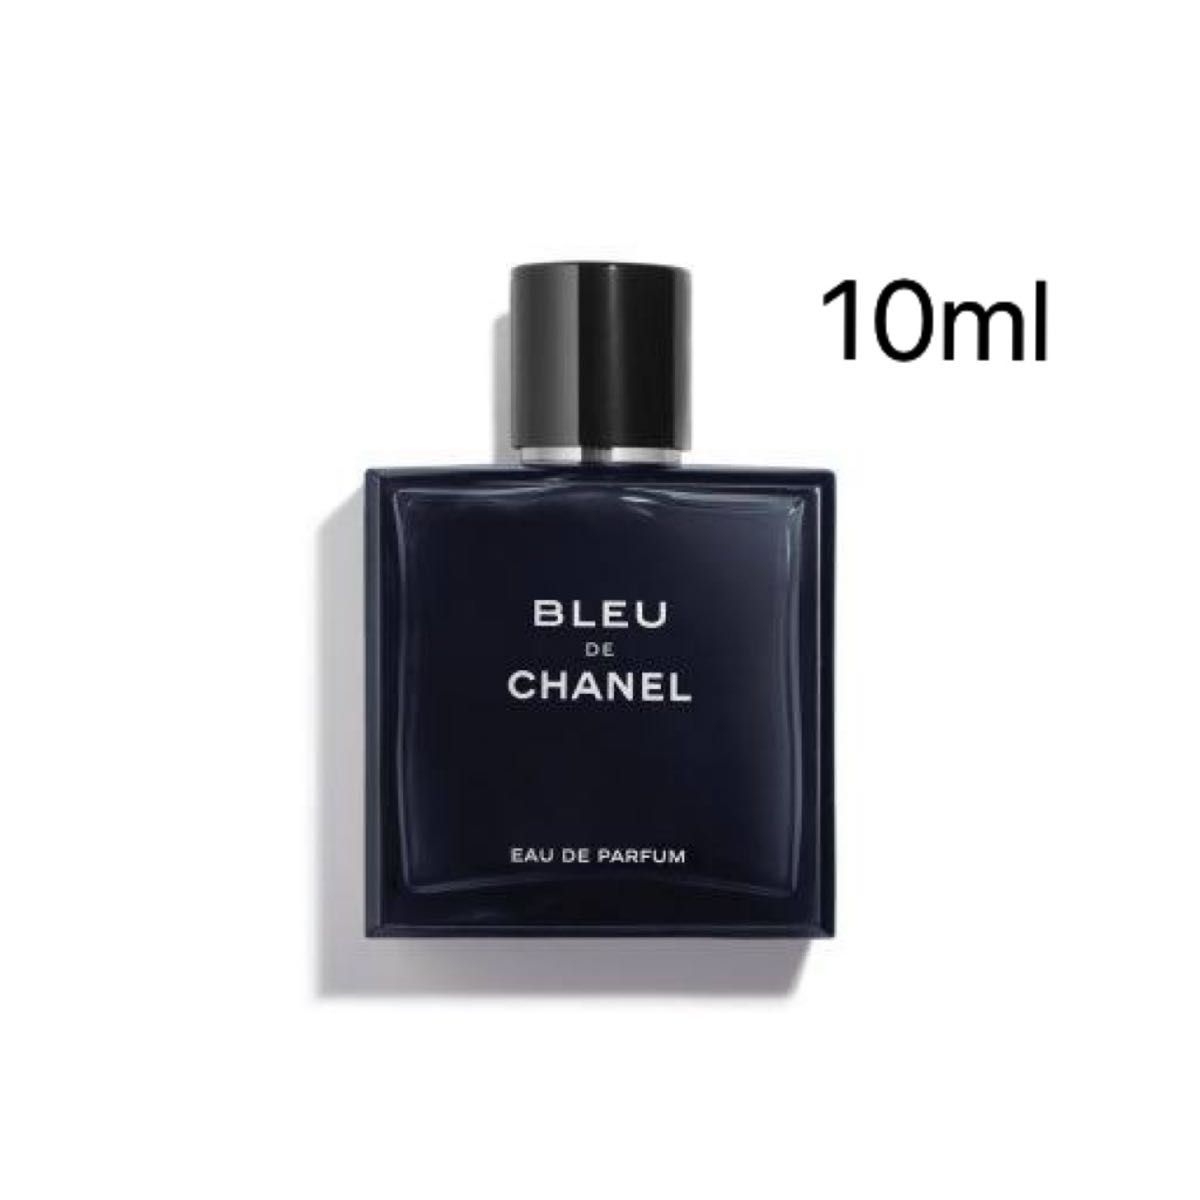 Bleu de Chanel Eau de Parfum 10ml